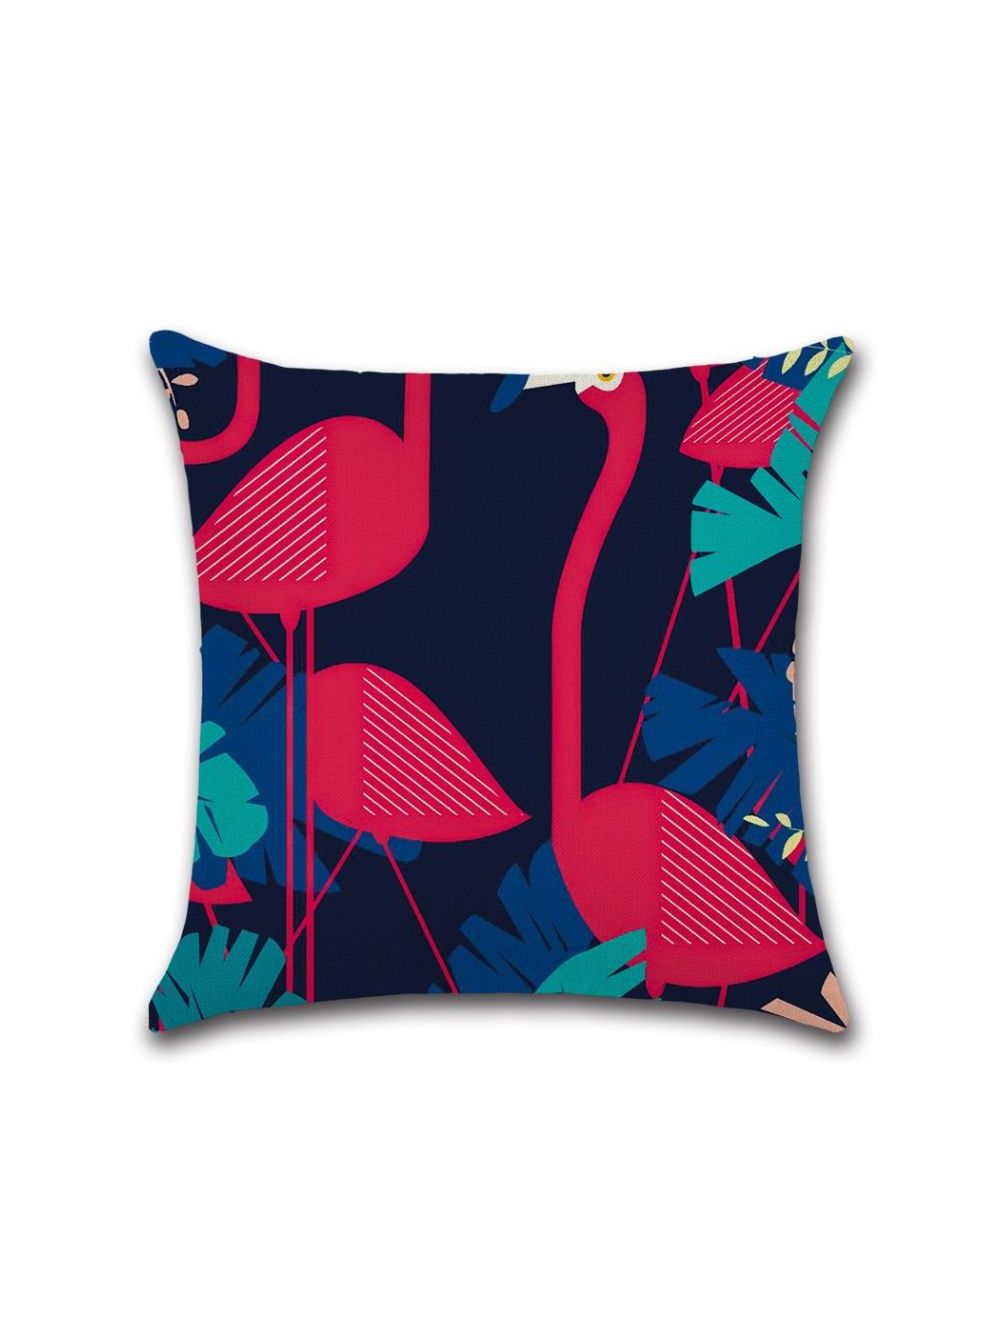 Rishahome Flamingo Printed Cushion Cover 45x45 cm-9C100B0002